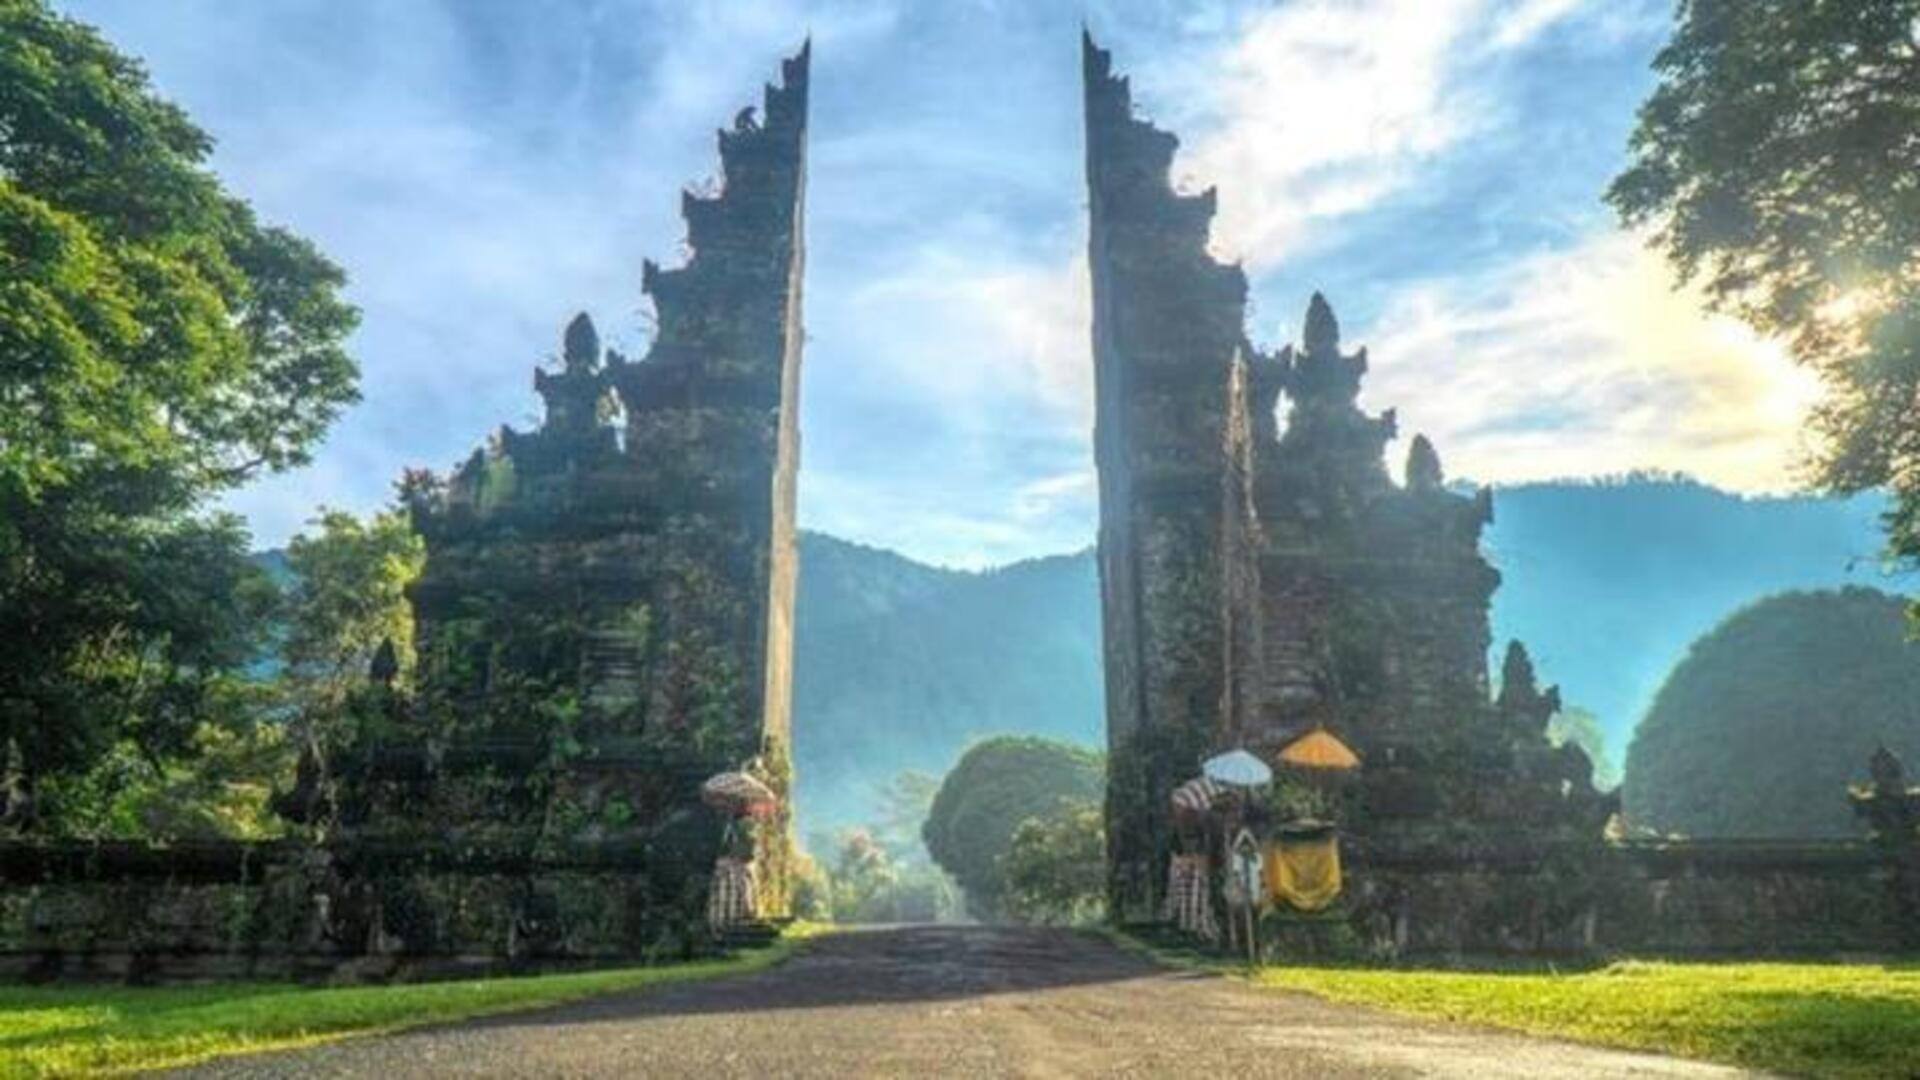 Panduan Wisata Untuk Menemukan Permata Tersembunyi Di Bali